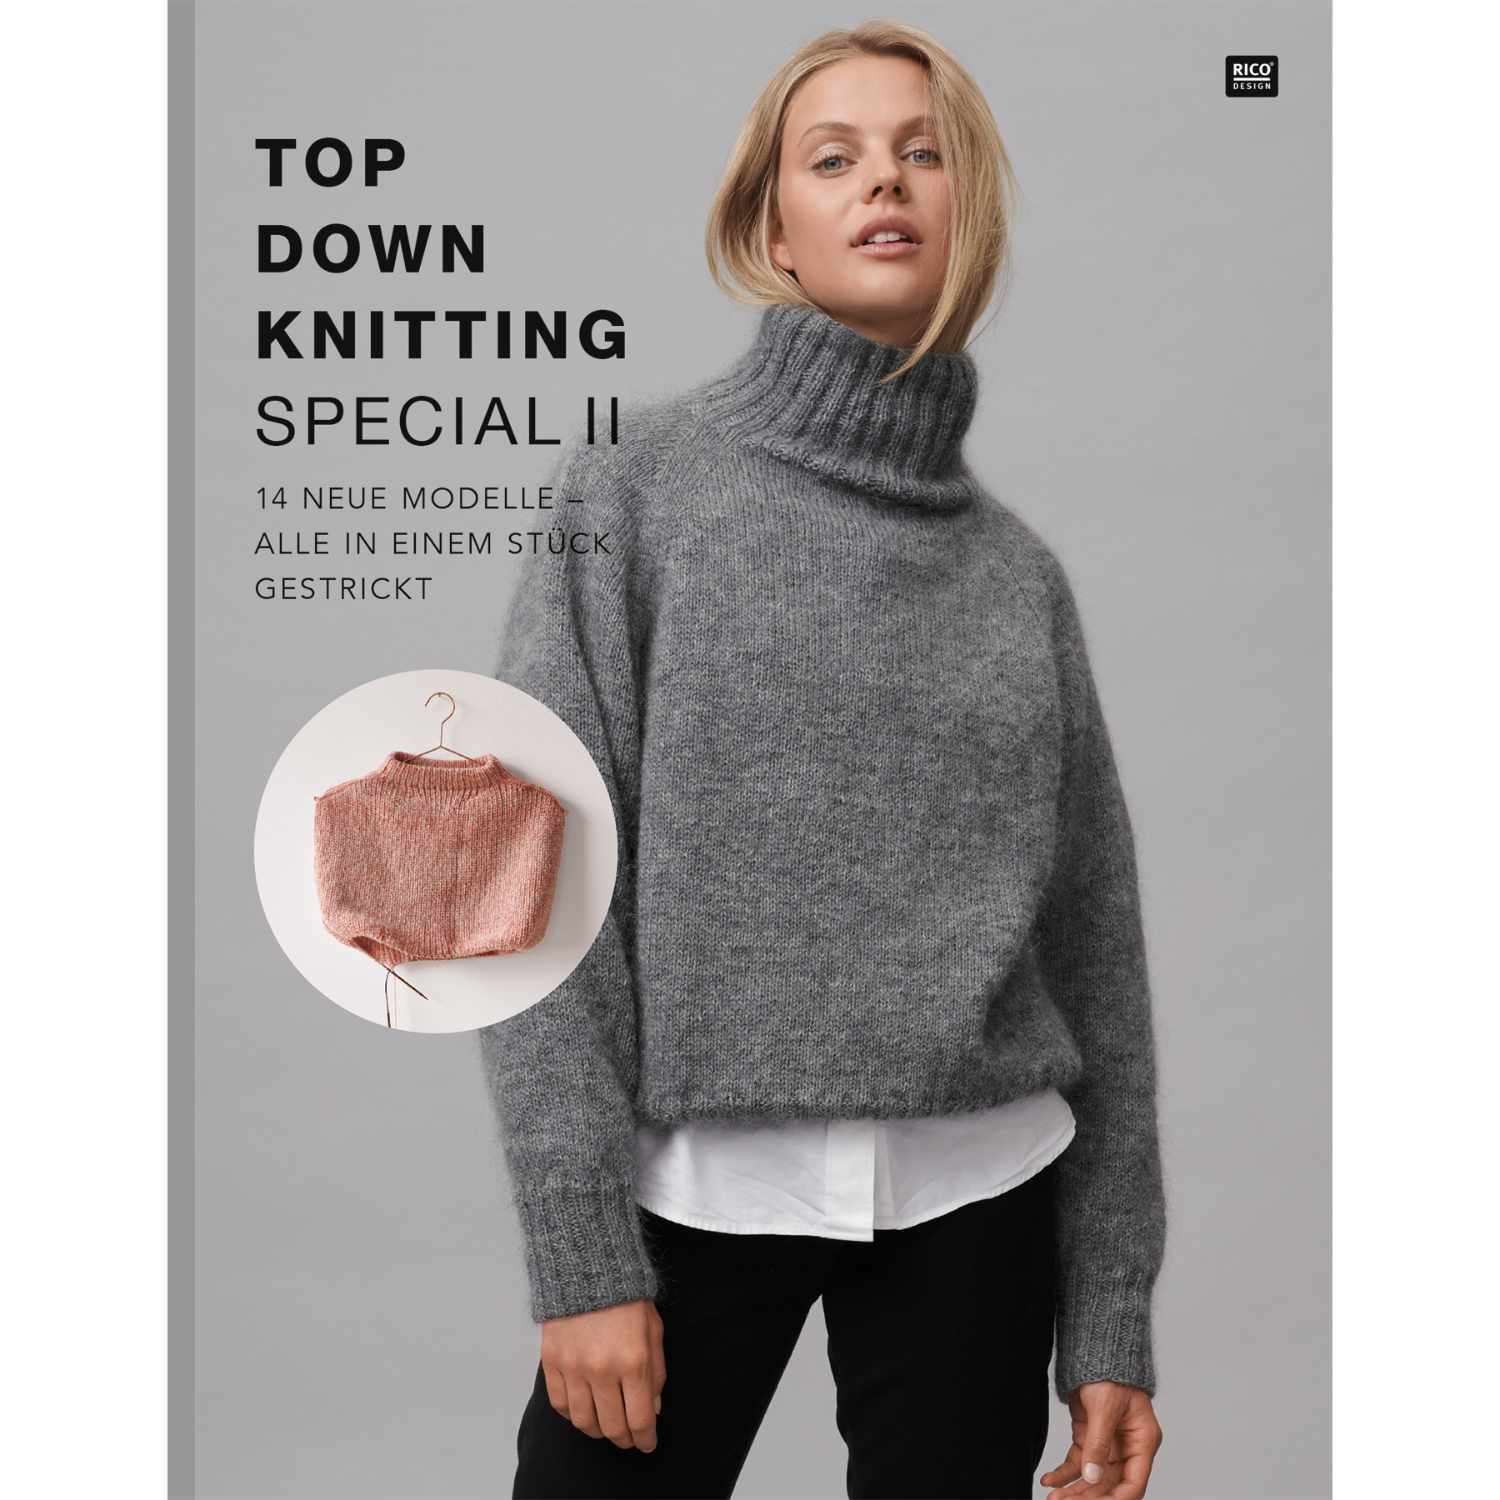 Top Down Knitting Special 2 deutsch